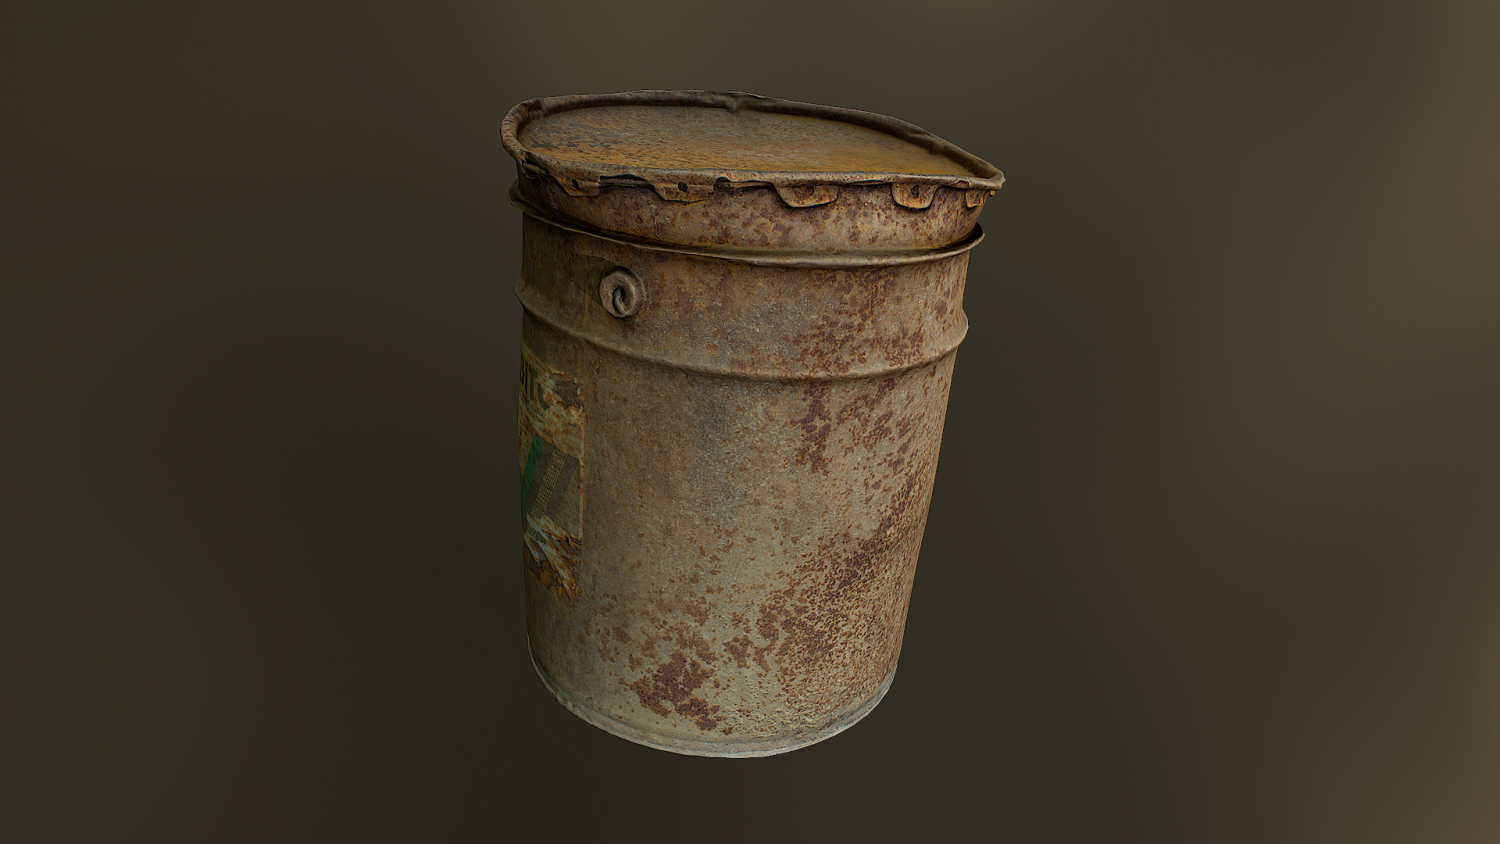 Instant barrel rust фото 109